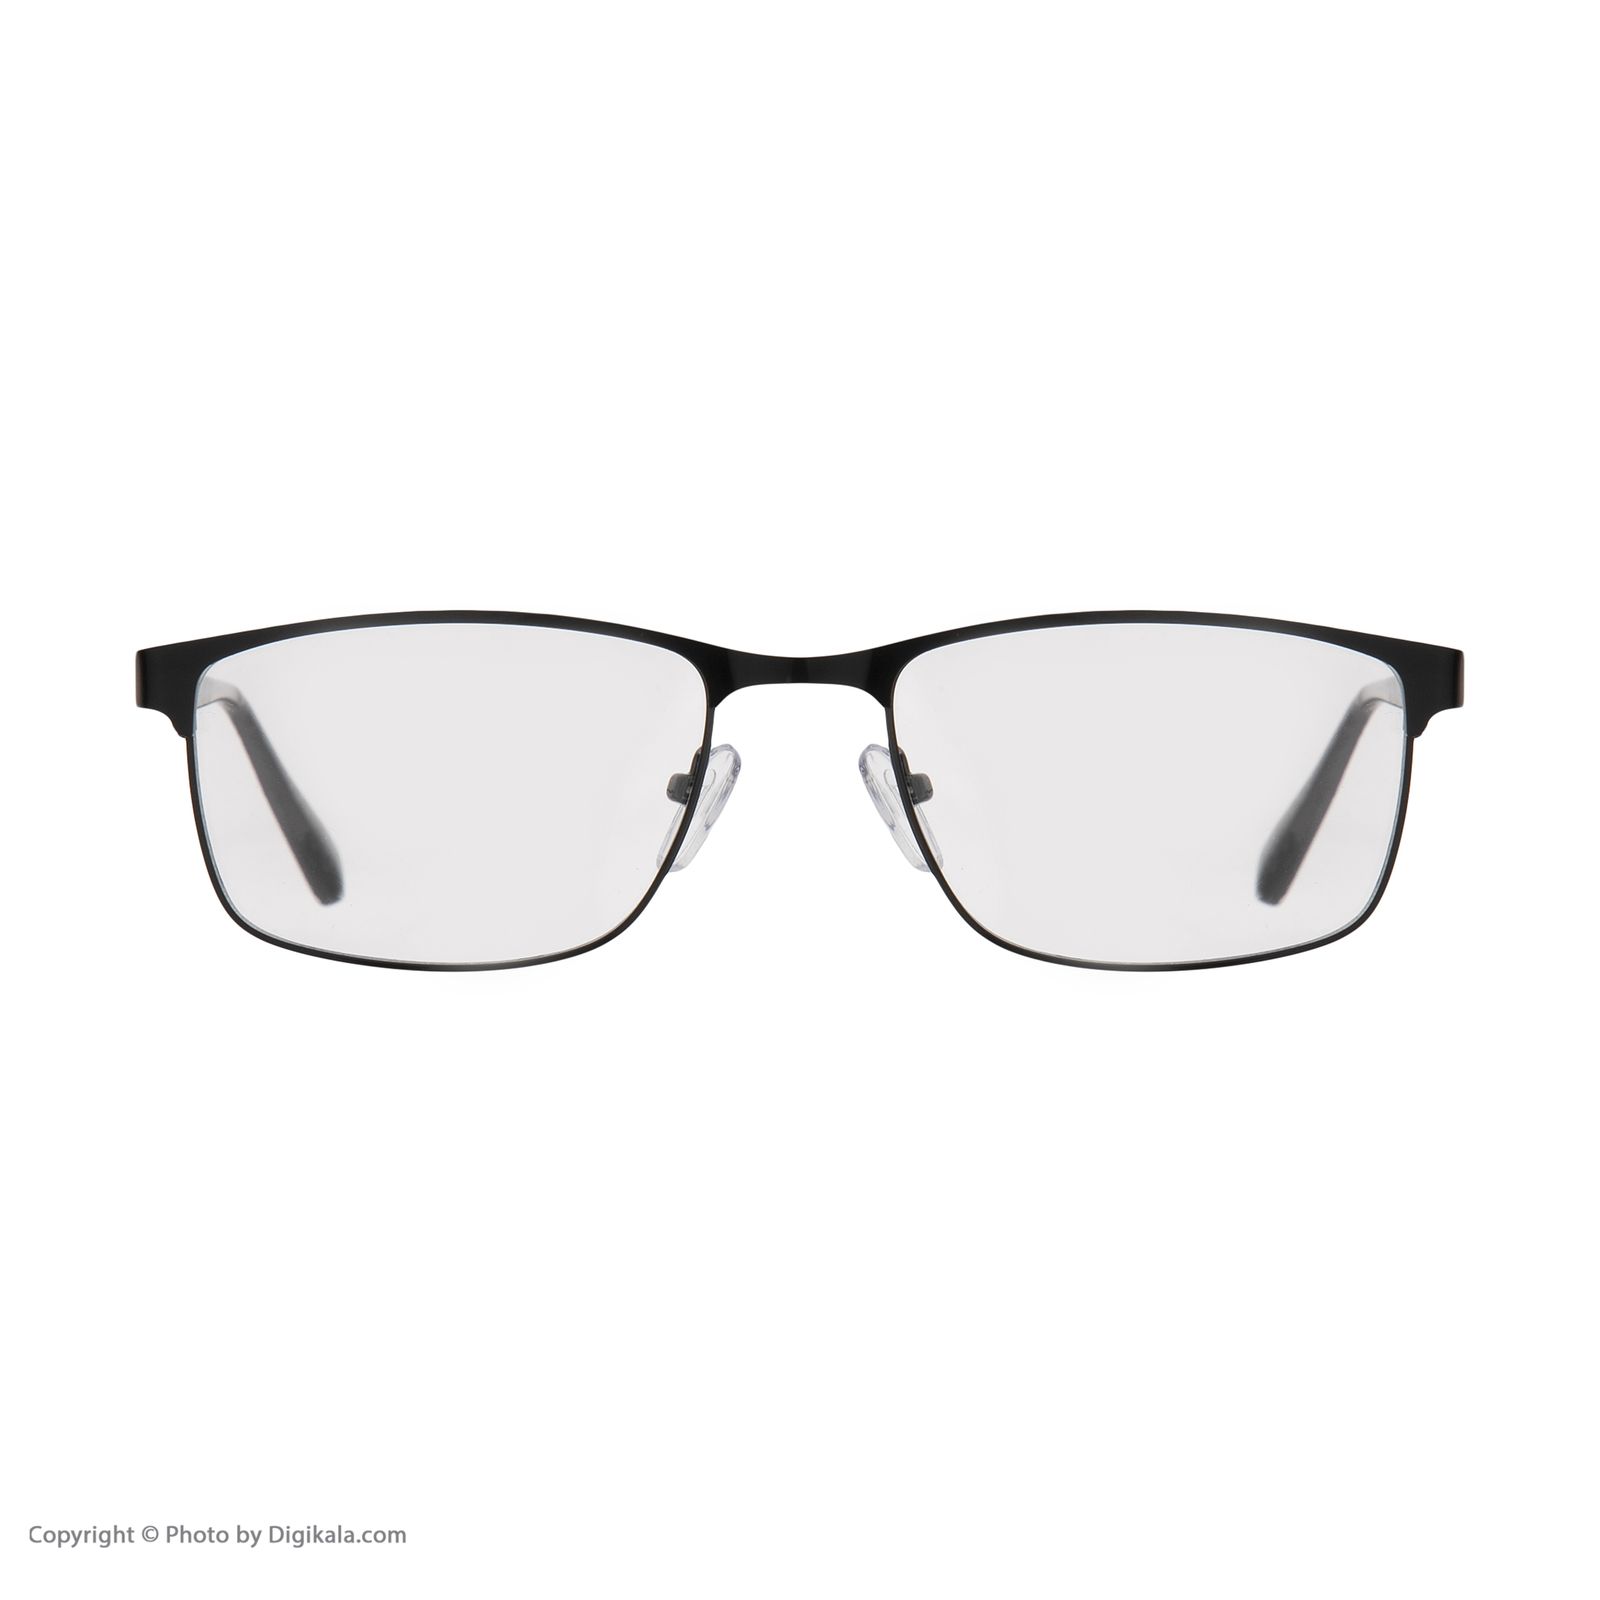 فریم عینک طبی امپریو آرمانی مدل 8986 -  - 6